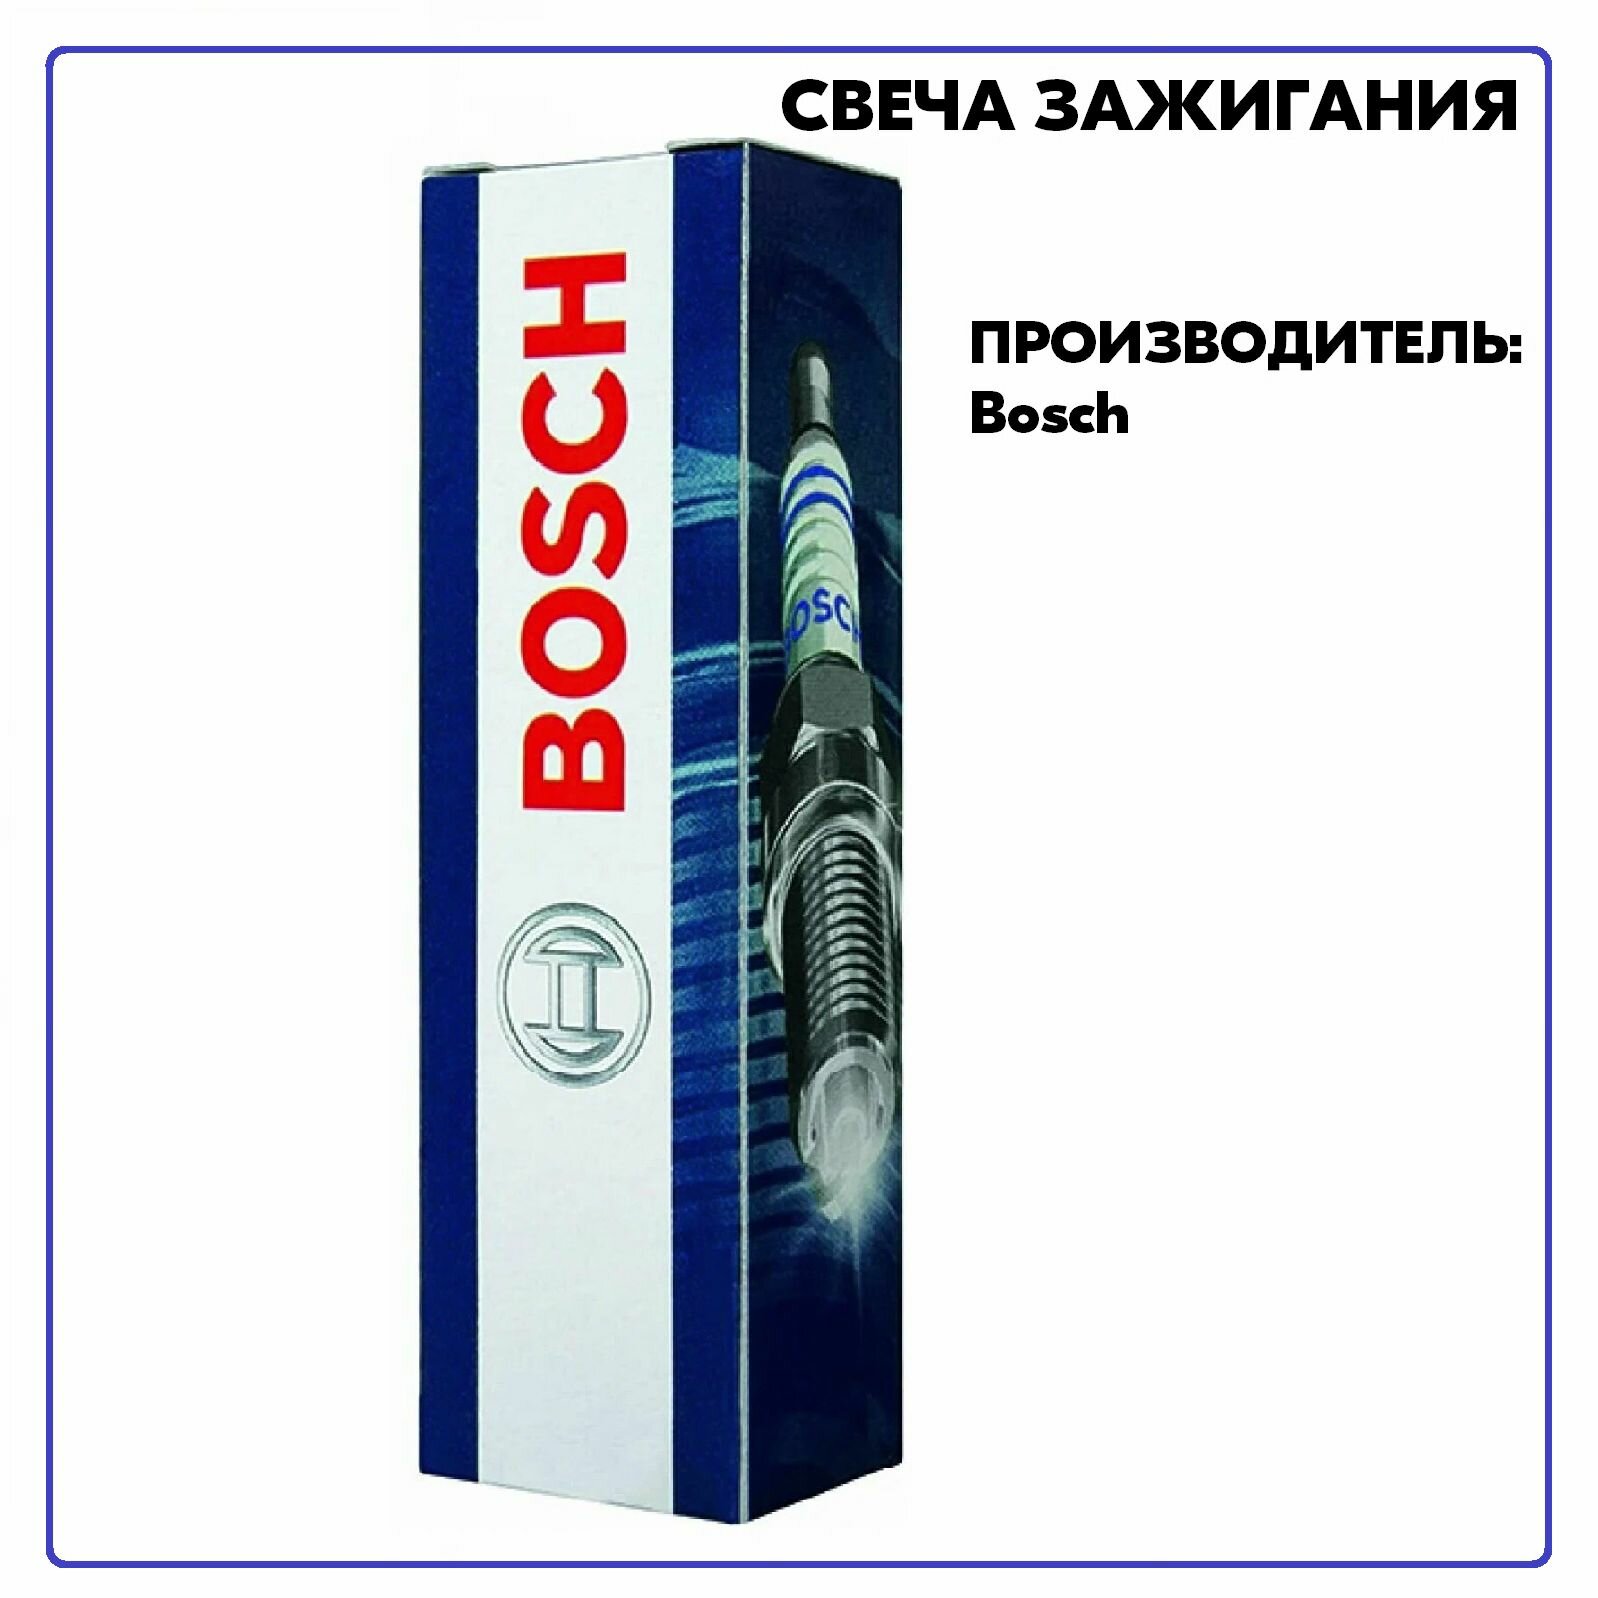 Свеча 242236563, производитель Bosch